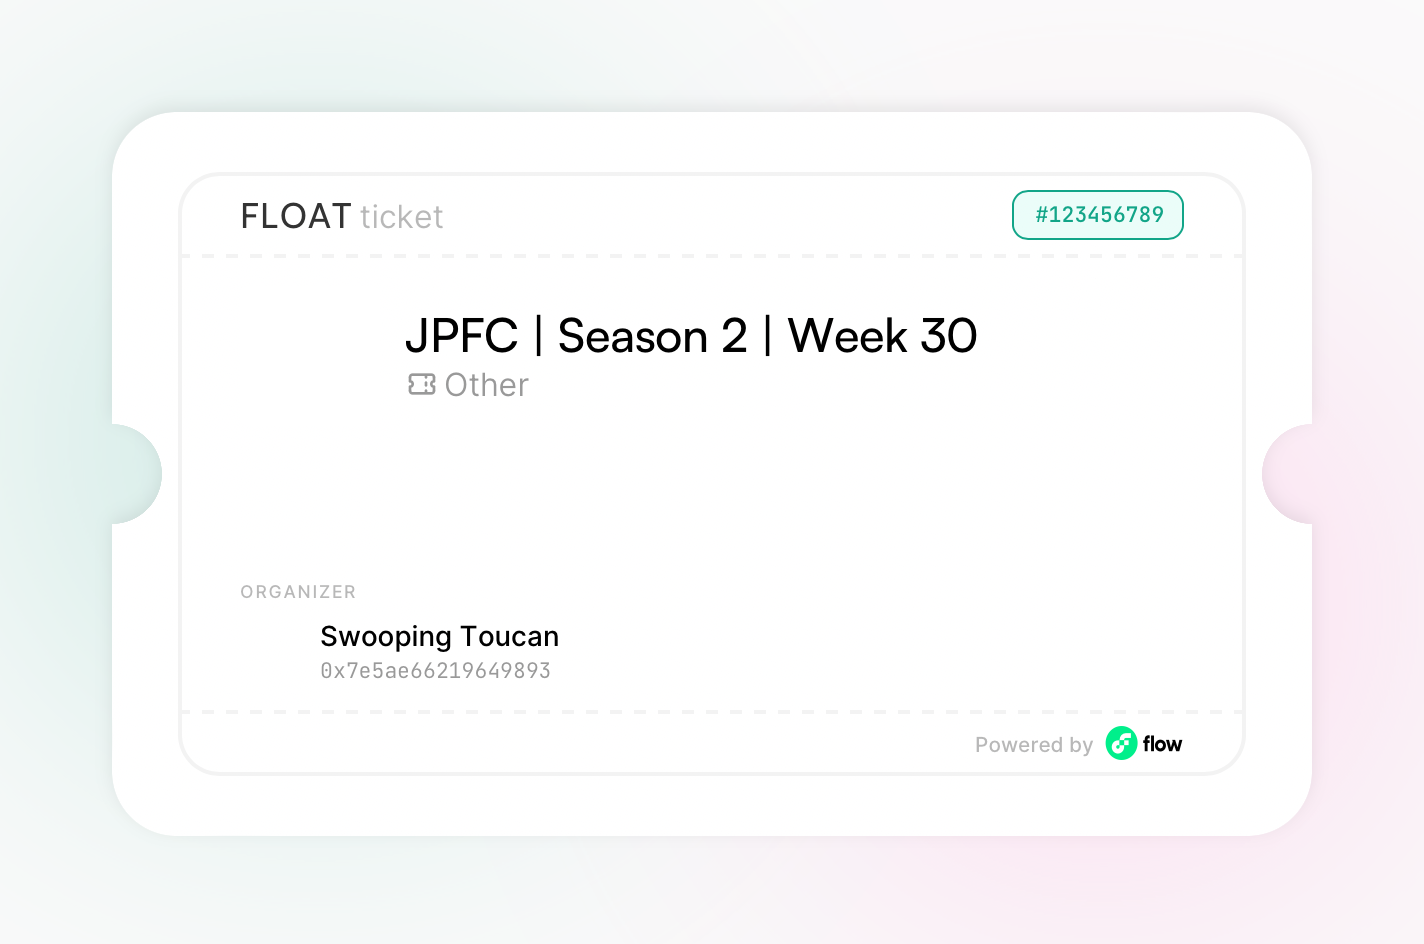 JPFC | Season 2 | Week 30 asset